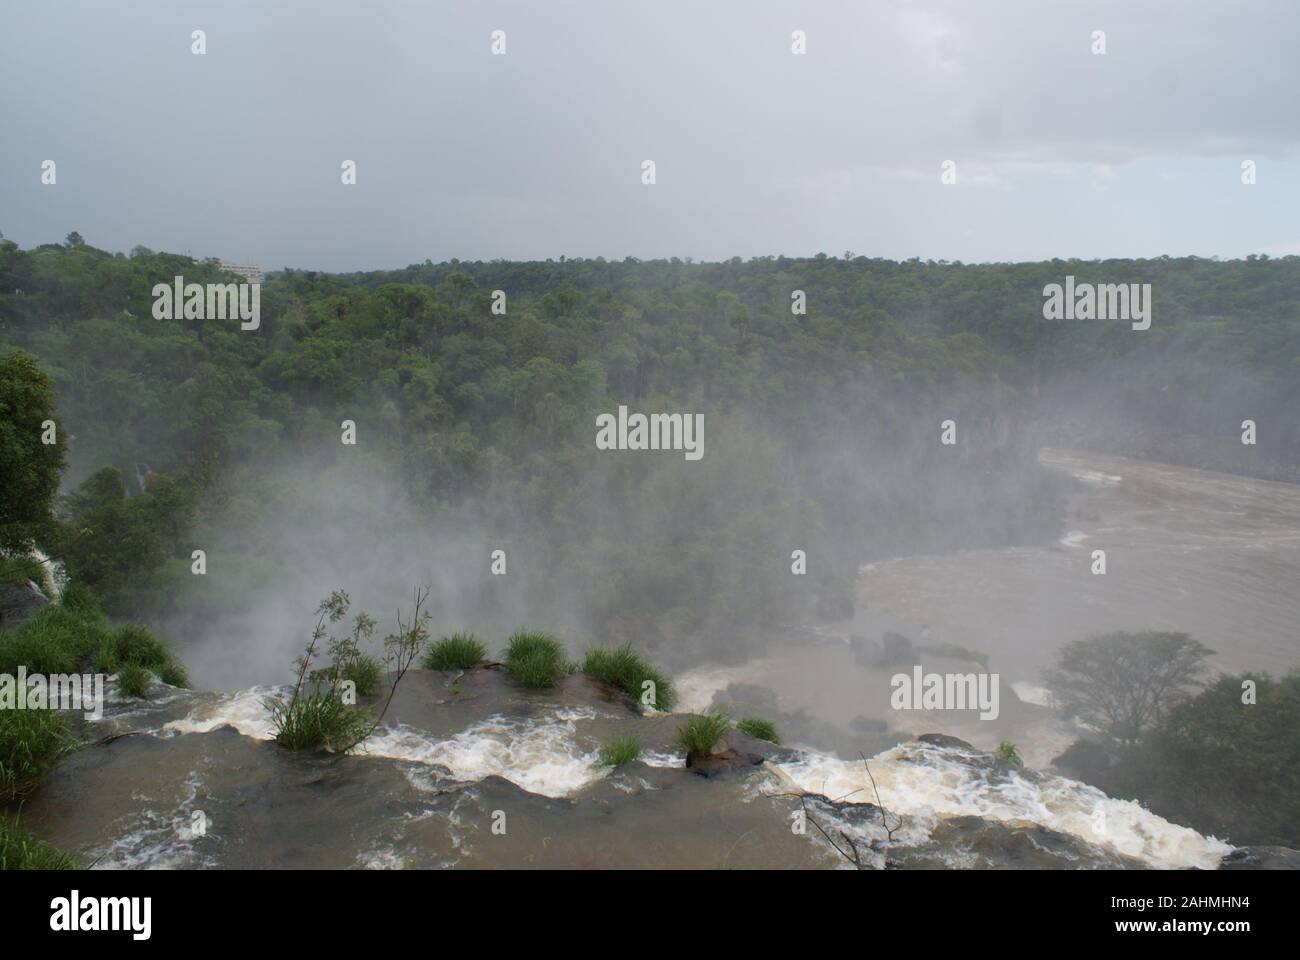 Wasserfälle von Iguacu in Brasilien Stockfoto